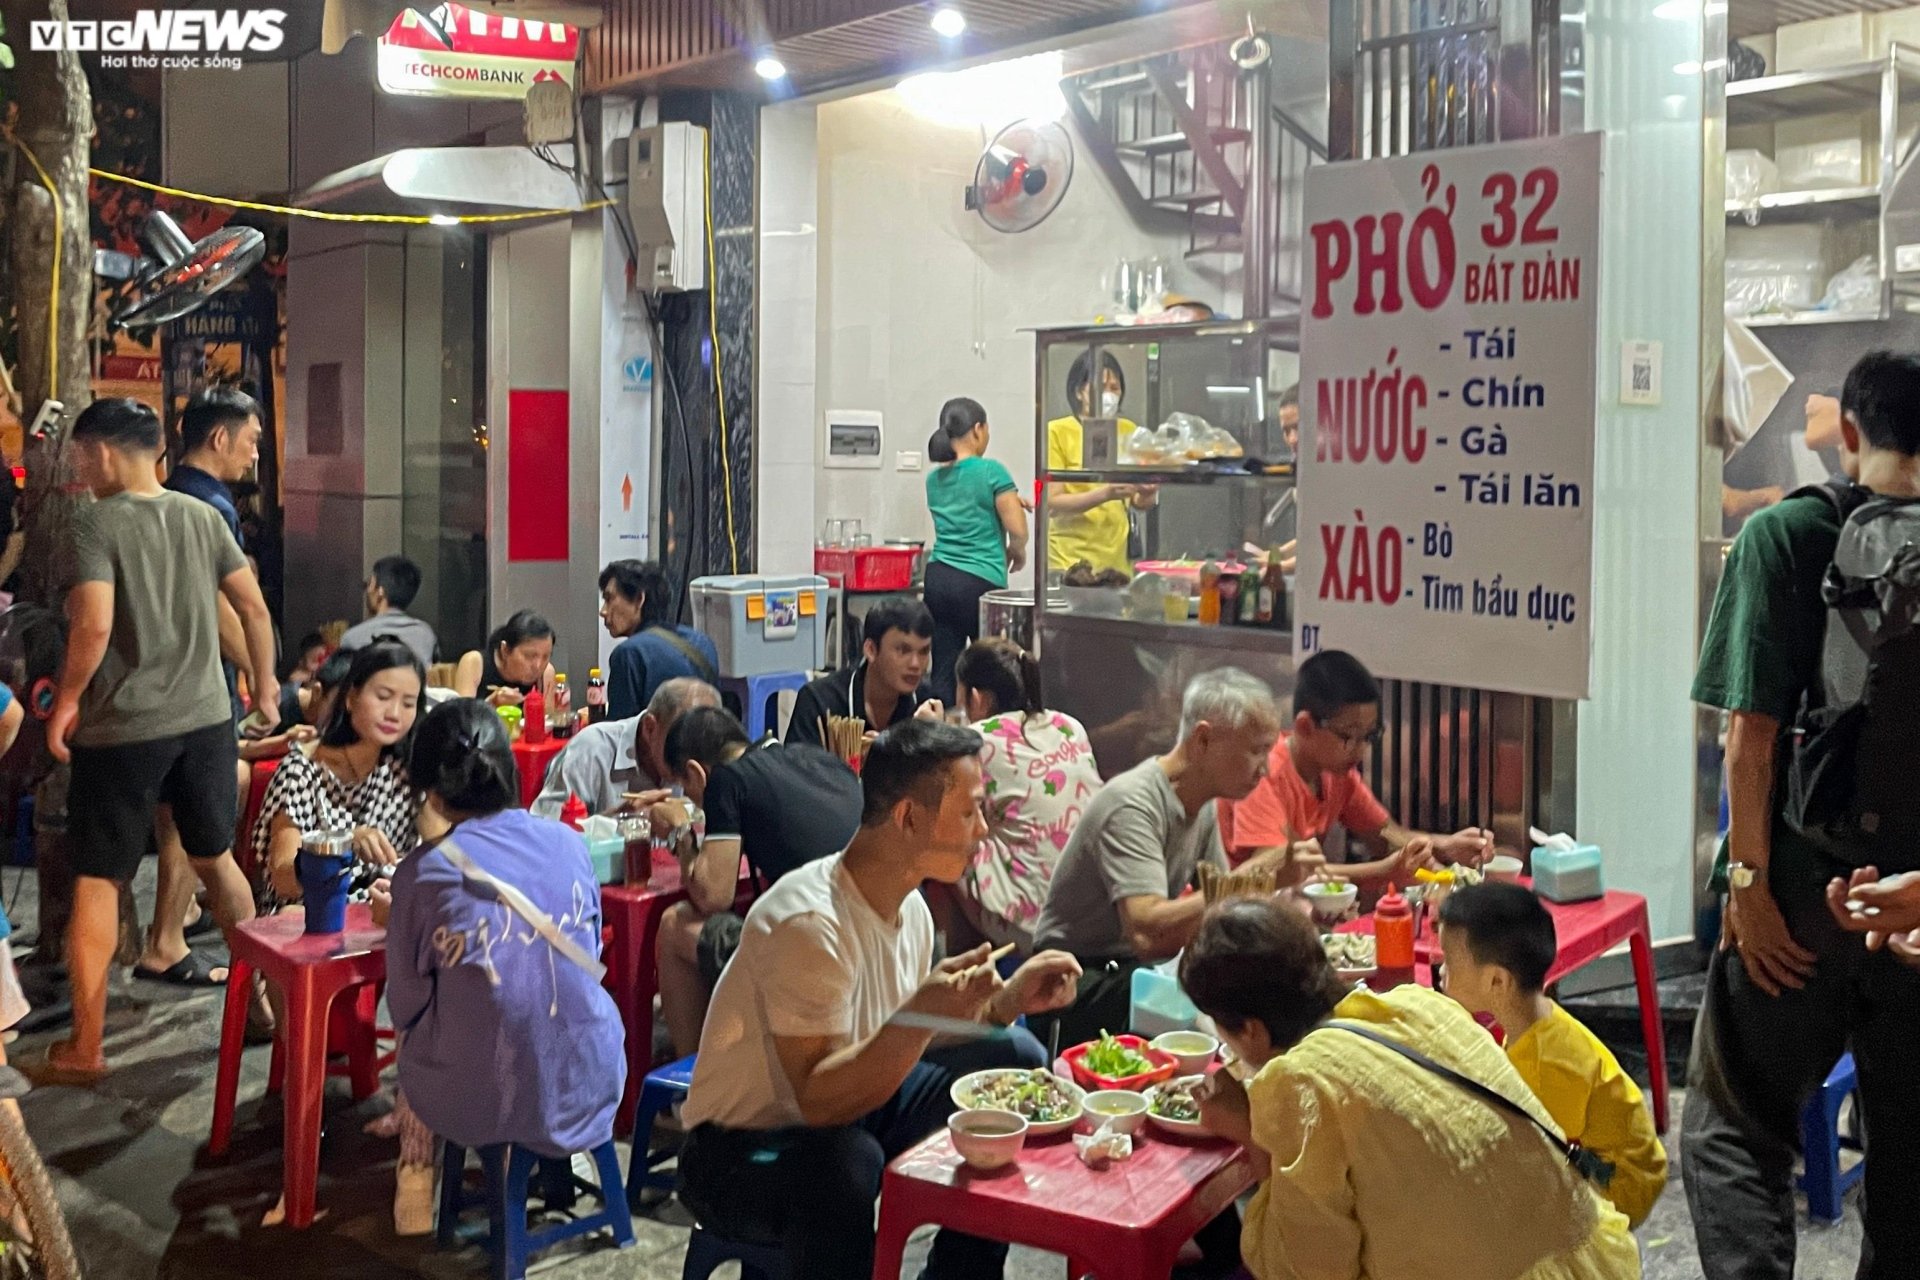 Hàng quán vỉa hè phố cổ Hà Nội chật kín khách dịp nghỉ lễ Quốc khánh - Ảnh 8.